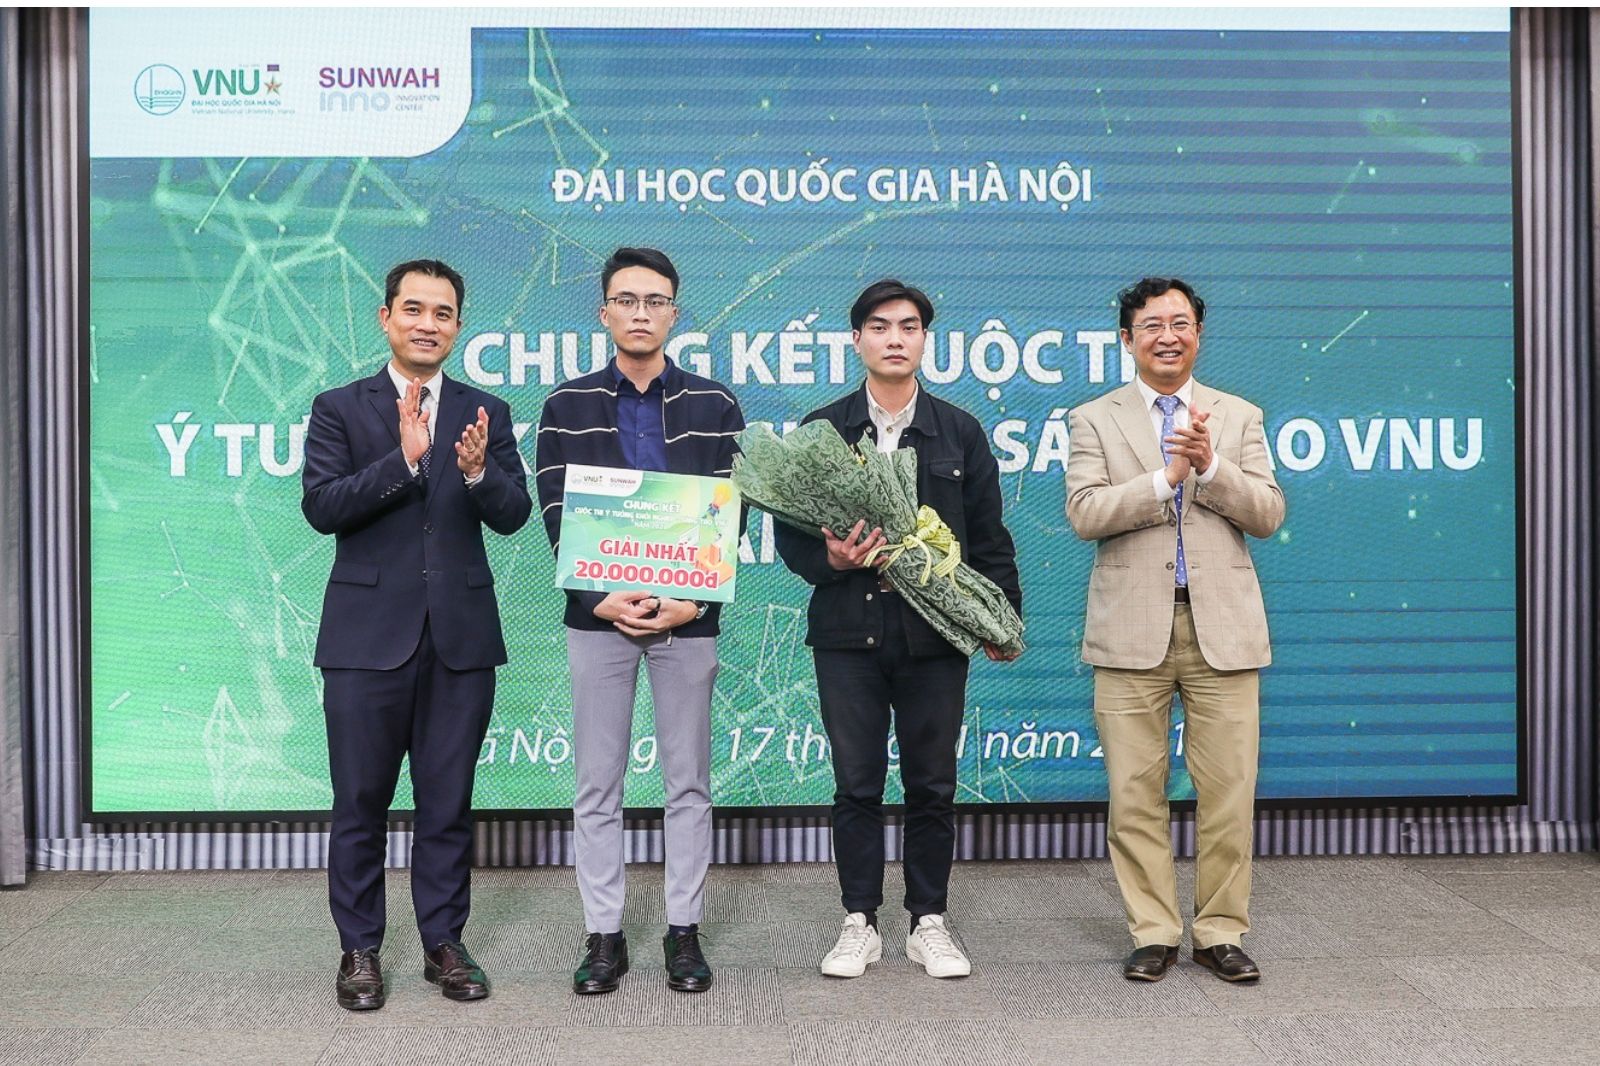 Đội Saleworks giành giải Nhất cuộc thi Ý tưởng Khởi nghiệp – Sáng tạo VNU năm 2021